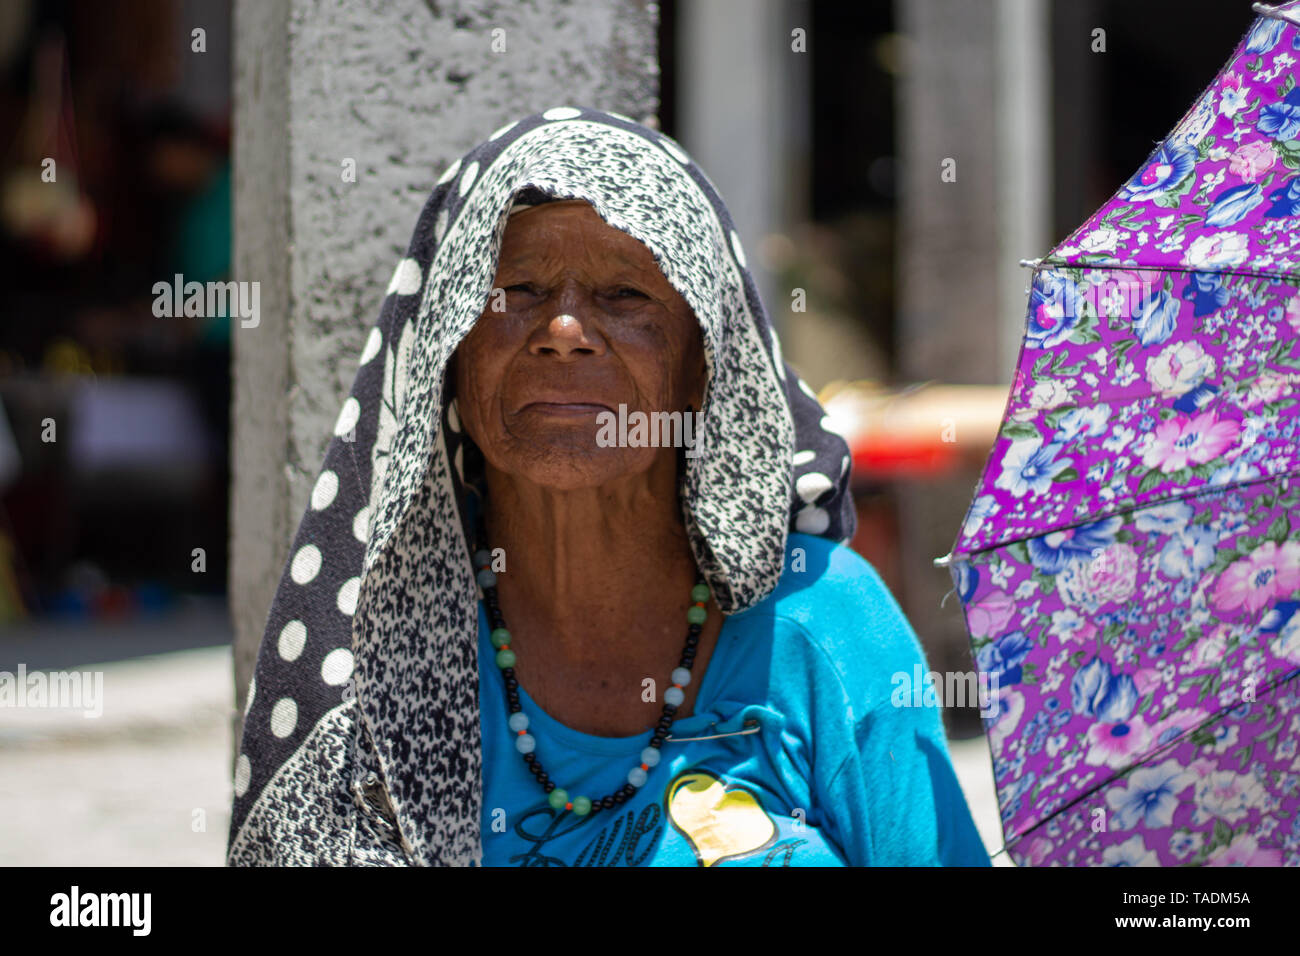 Indische Dame mit schwarzem Tuch auf dem Kopf und lila Schirm  Stockfotografie - Alamy